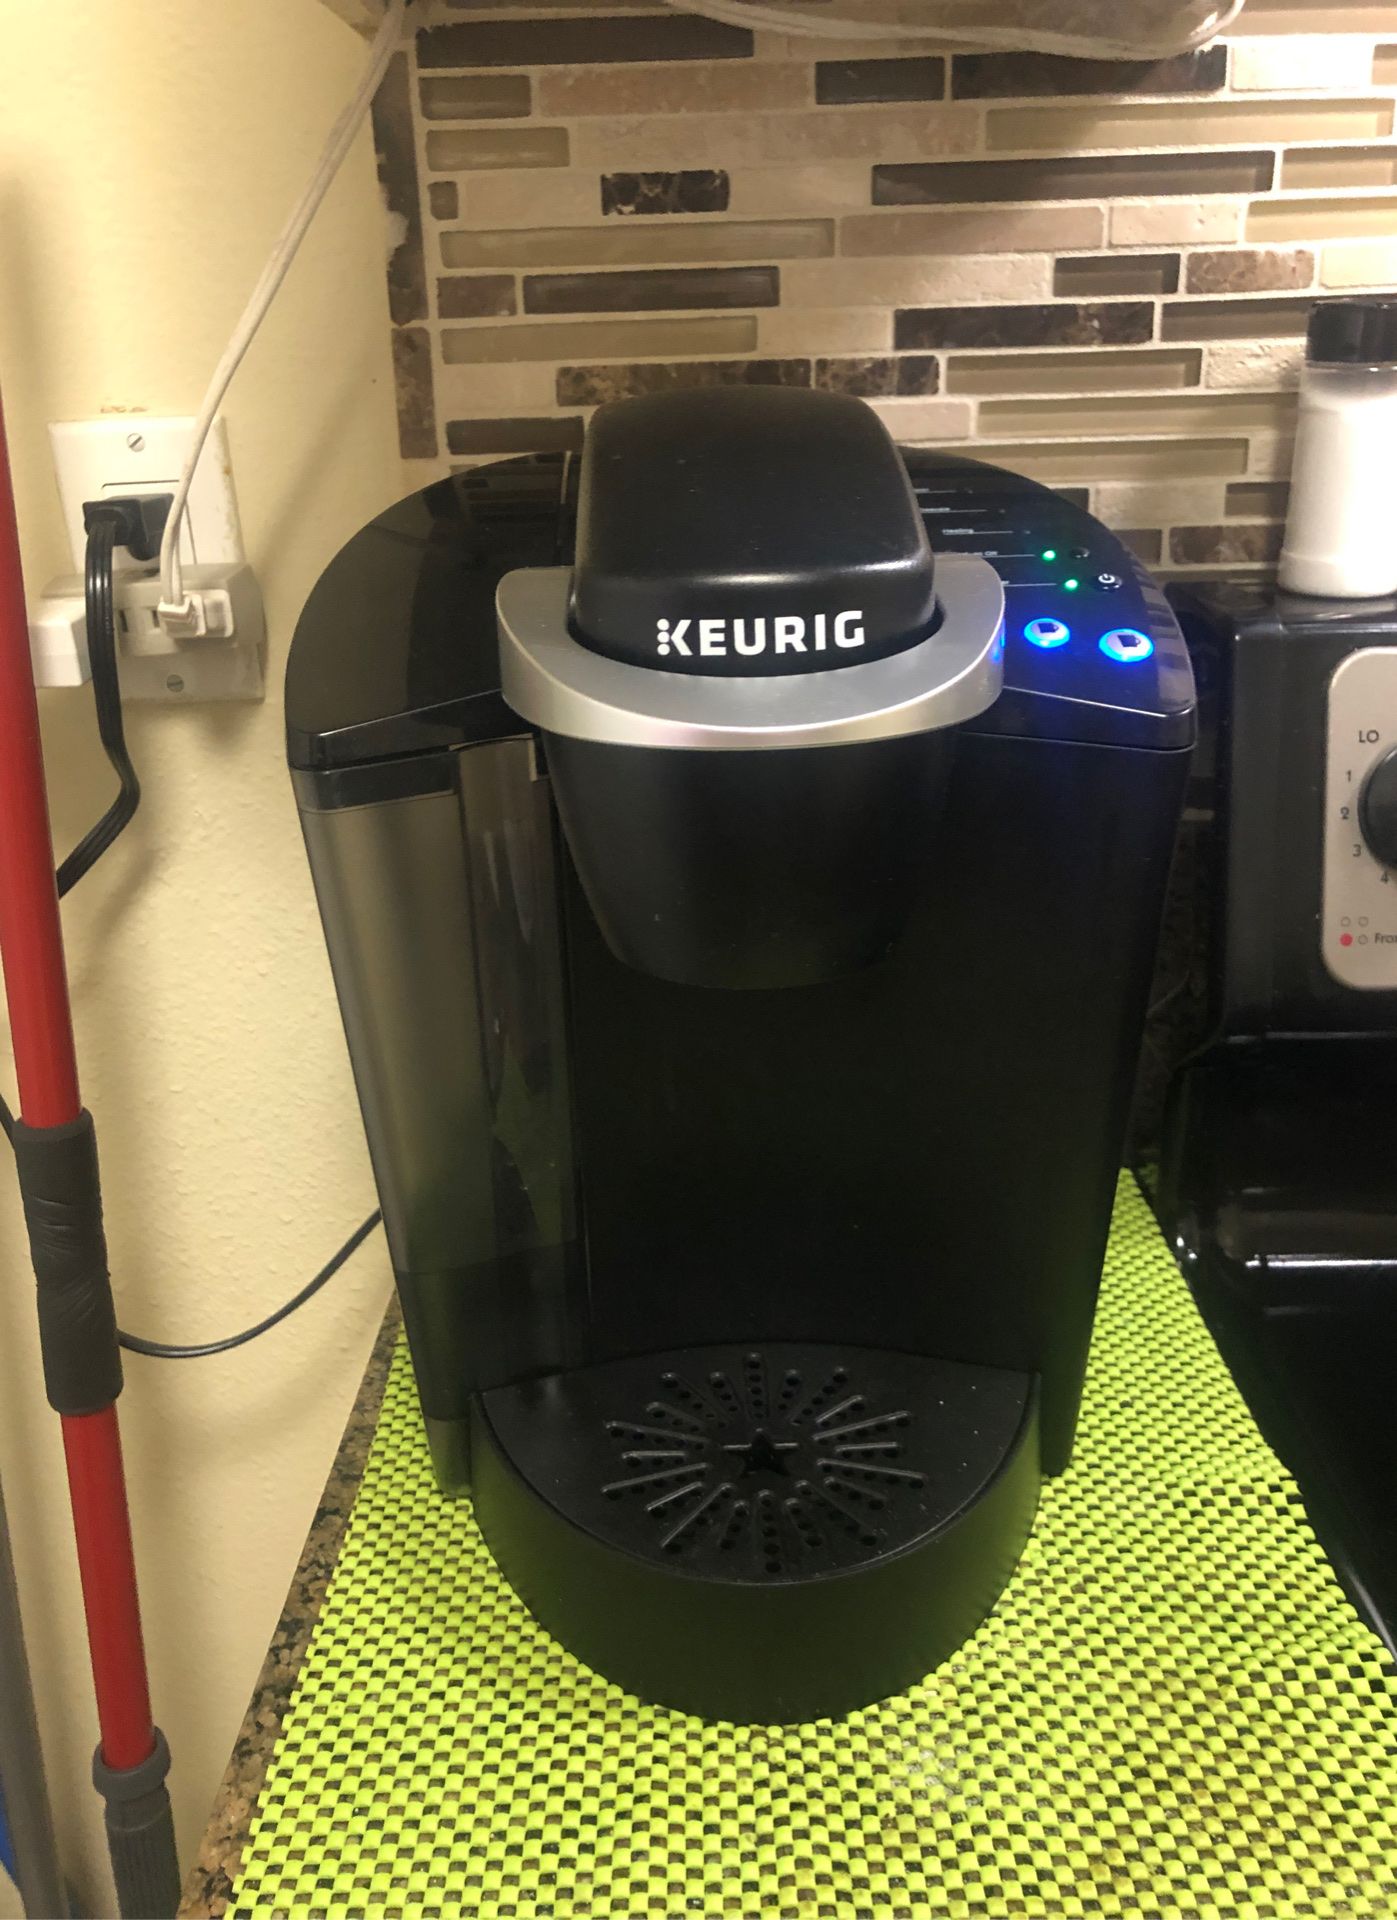 KEURIG coffee maker